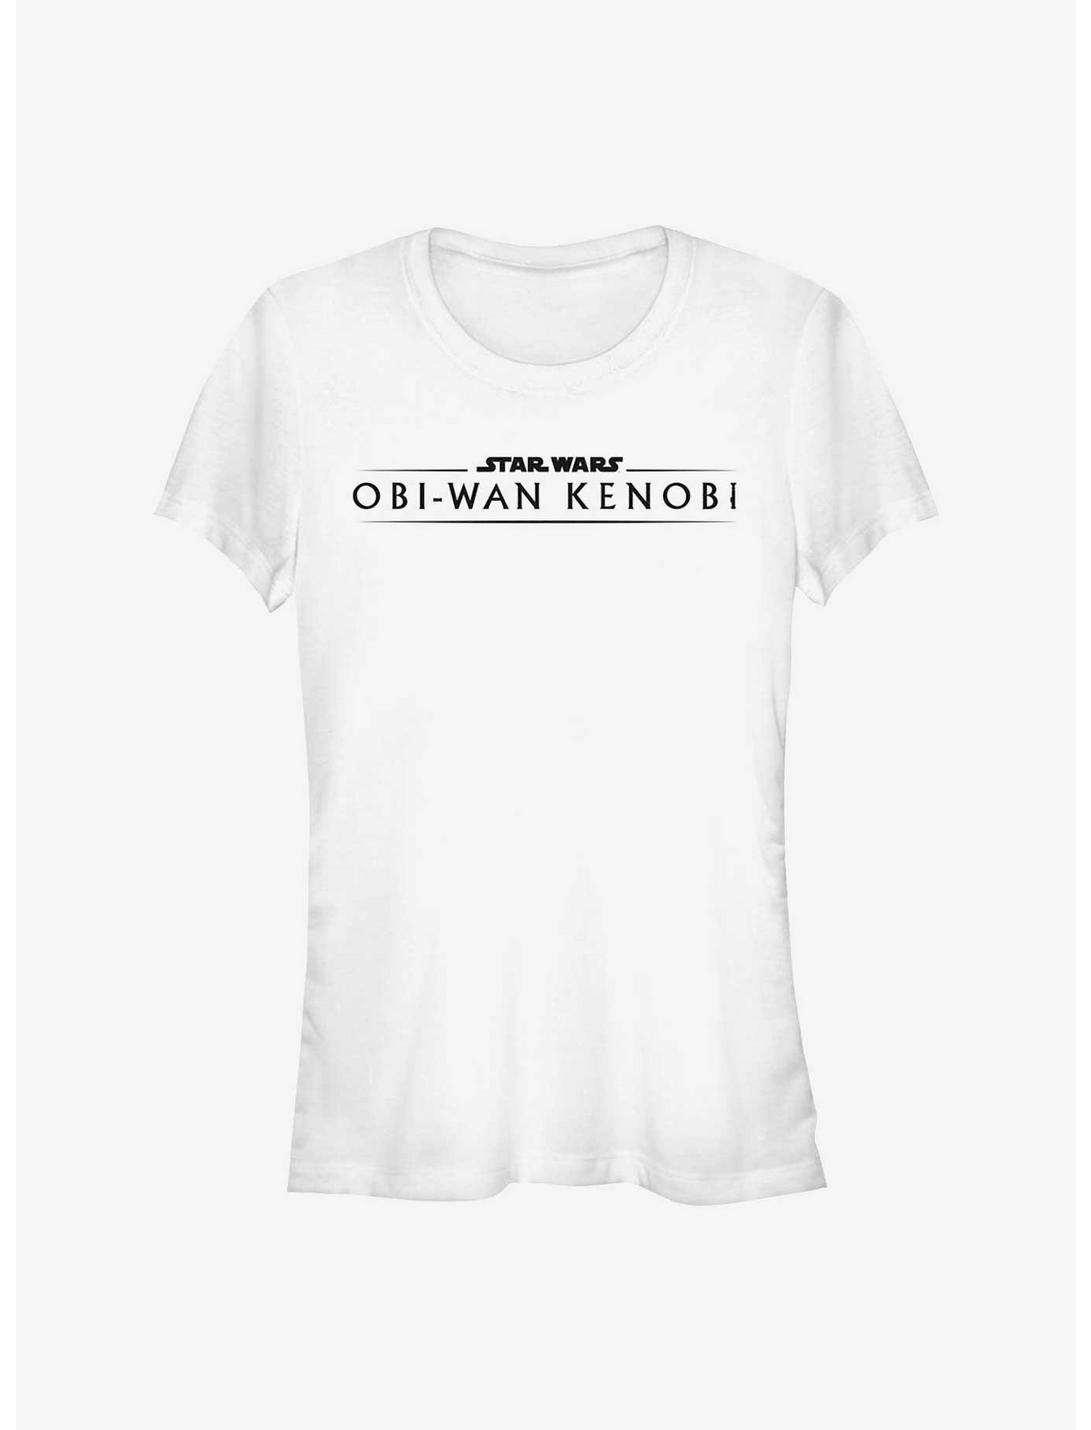 Star Wars Obi-Wan Kenobi Logo Girls T-Shirt, WHITE, hi-res